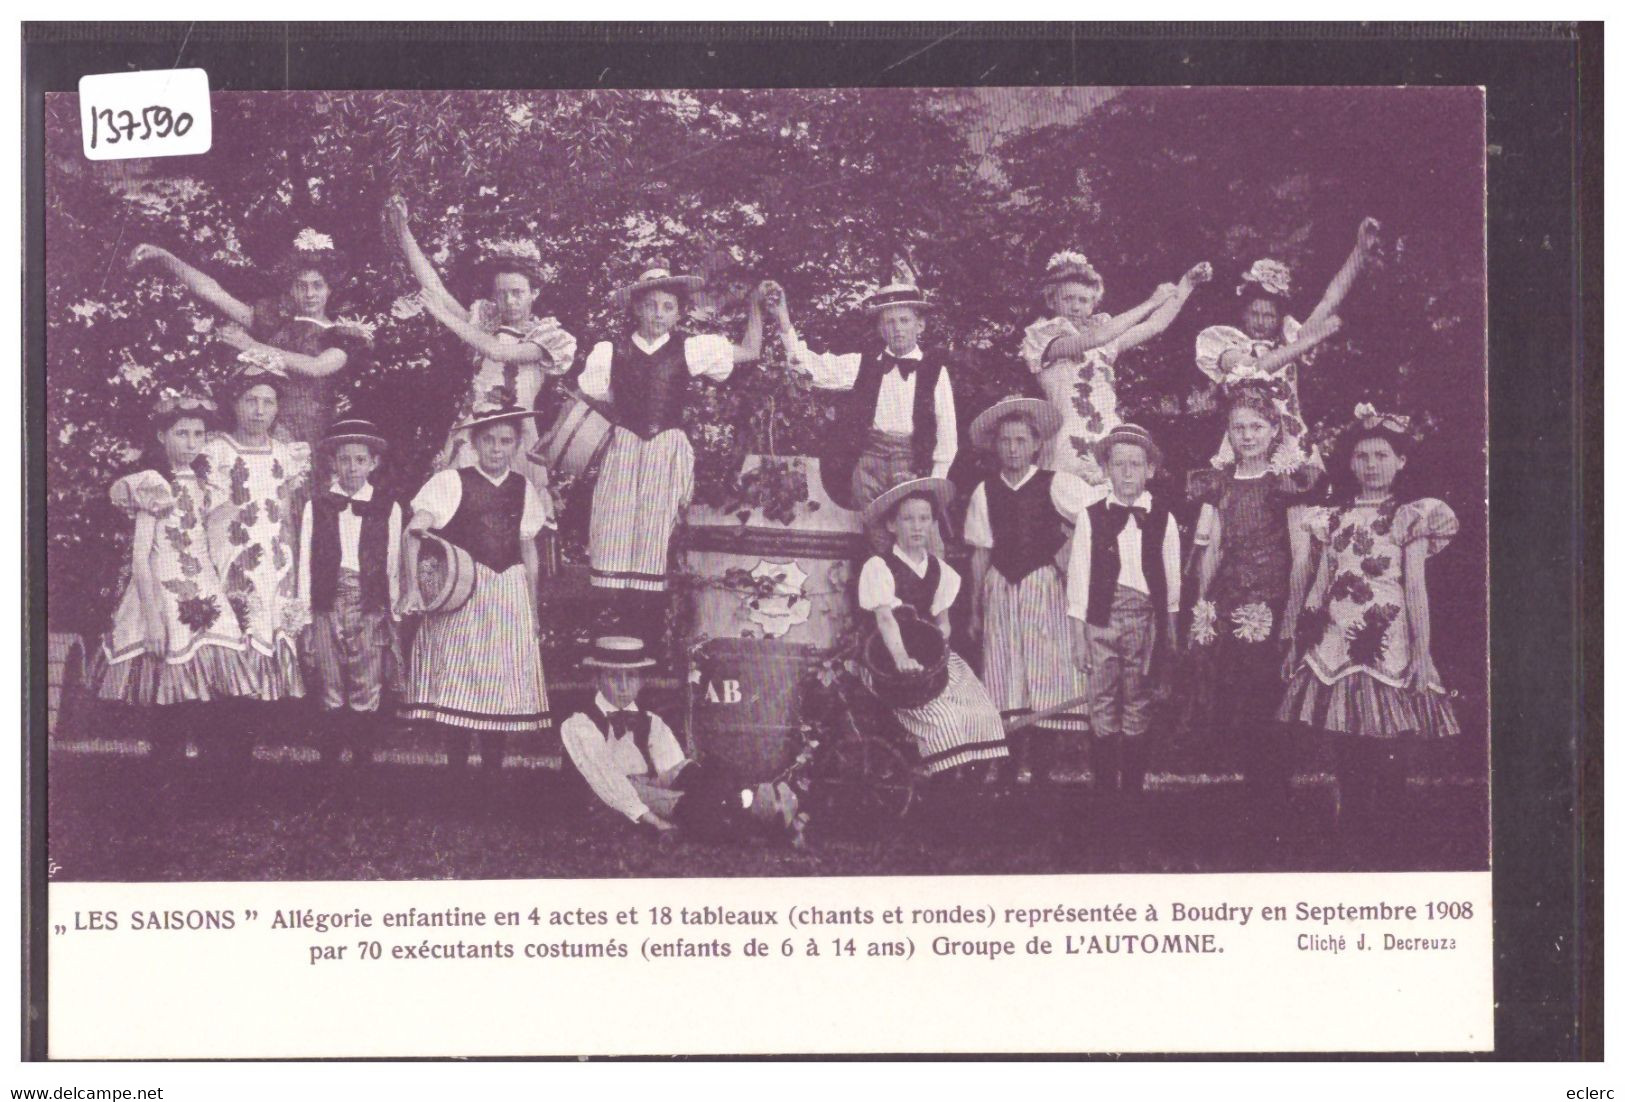 BOUDRY - THEATRE - LES SAISONS - ALLEGORIE ENFANTINE EN 4 ACTES - SEPTEMBRE 1908 - TB - Boudry